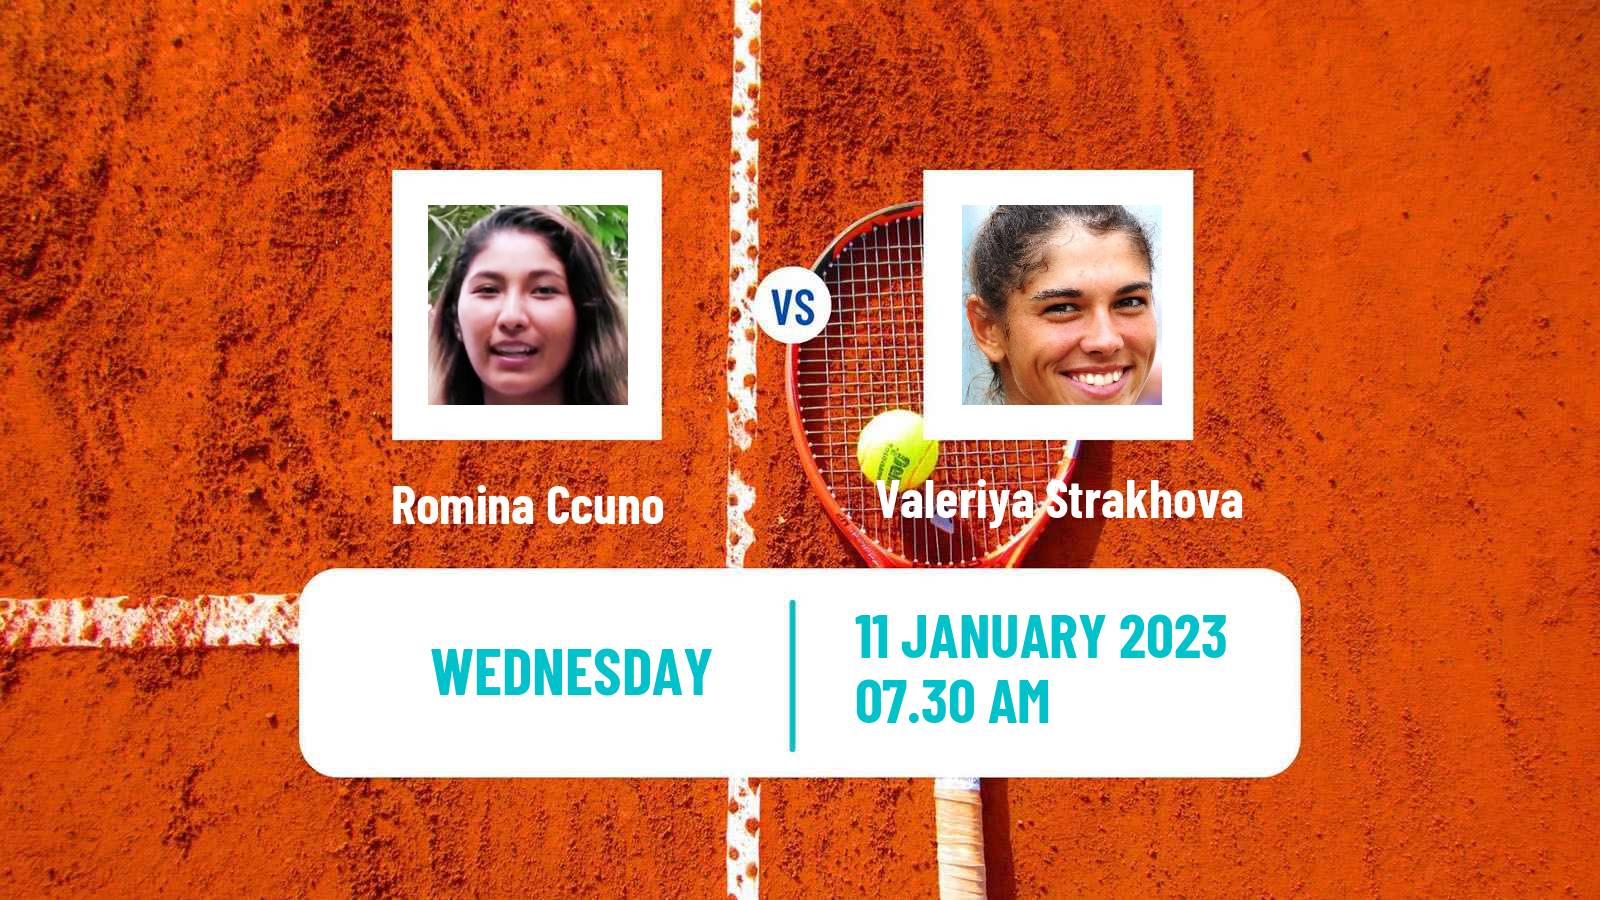 Tennis ITF Tournaments Romina Ccuno - Valeriya Strakhova